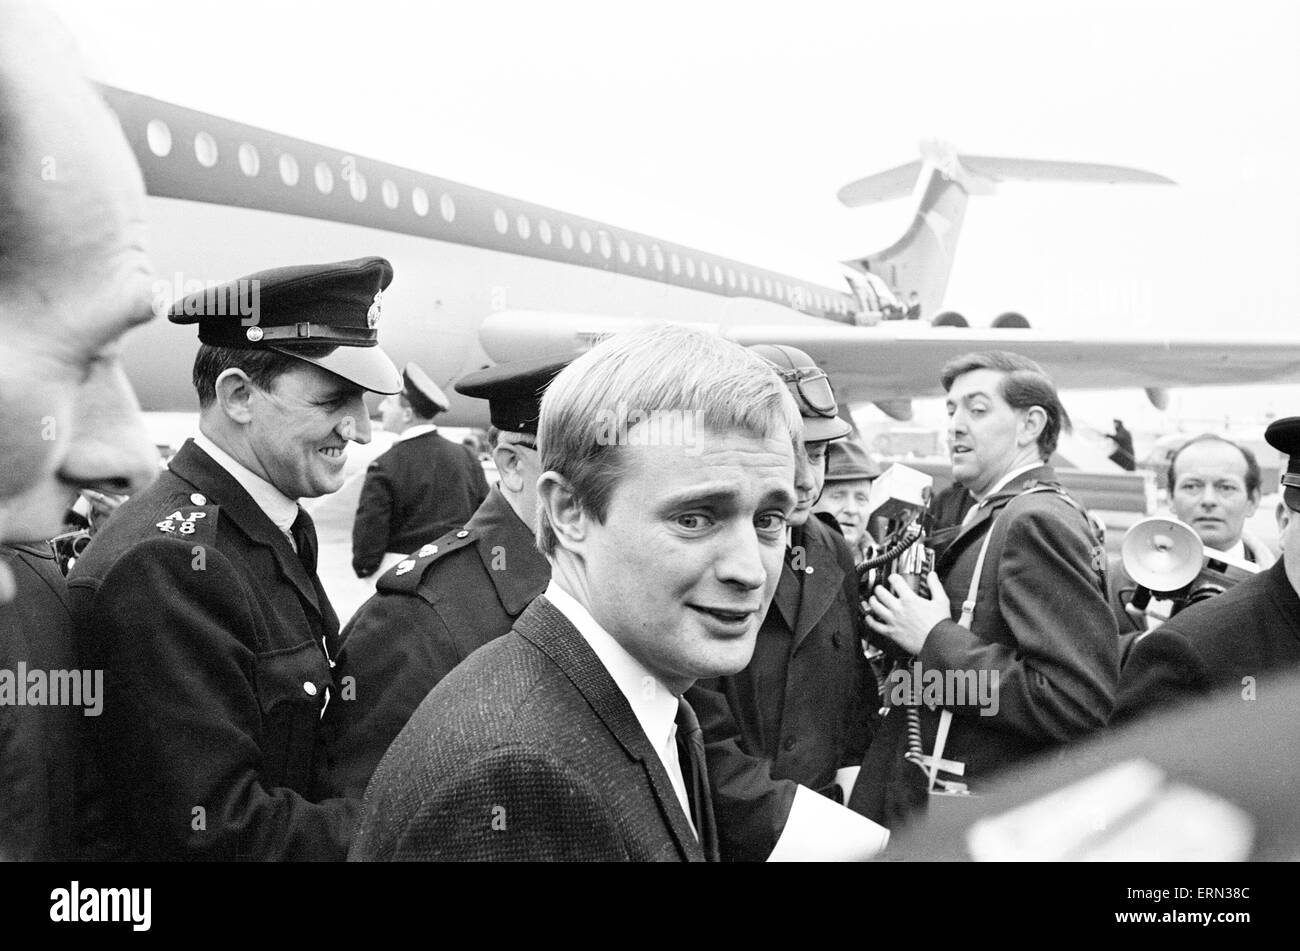 David McCallum, Schauspieler, spielt die Rolle des Geheimagenten Illya Kuryakin in NBC show The Man from U.N.C.L.E, abgebildet, Ankunft am Flughafen London Heathrow, 16. März 1966. UK-Promotion-Tour. Stockfoto